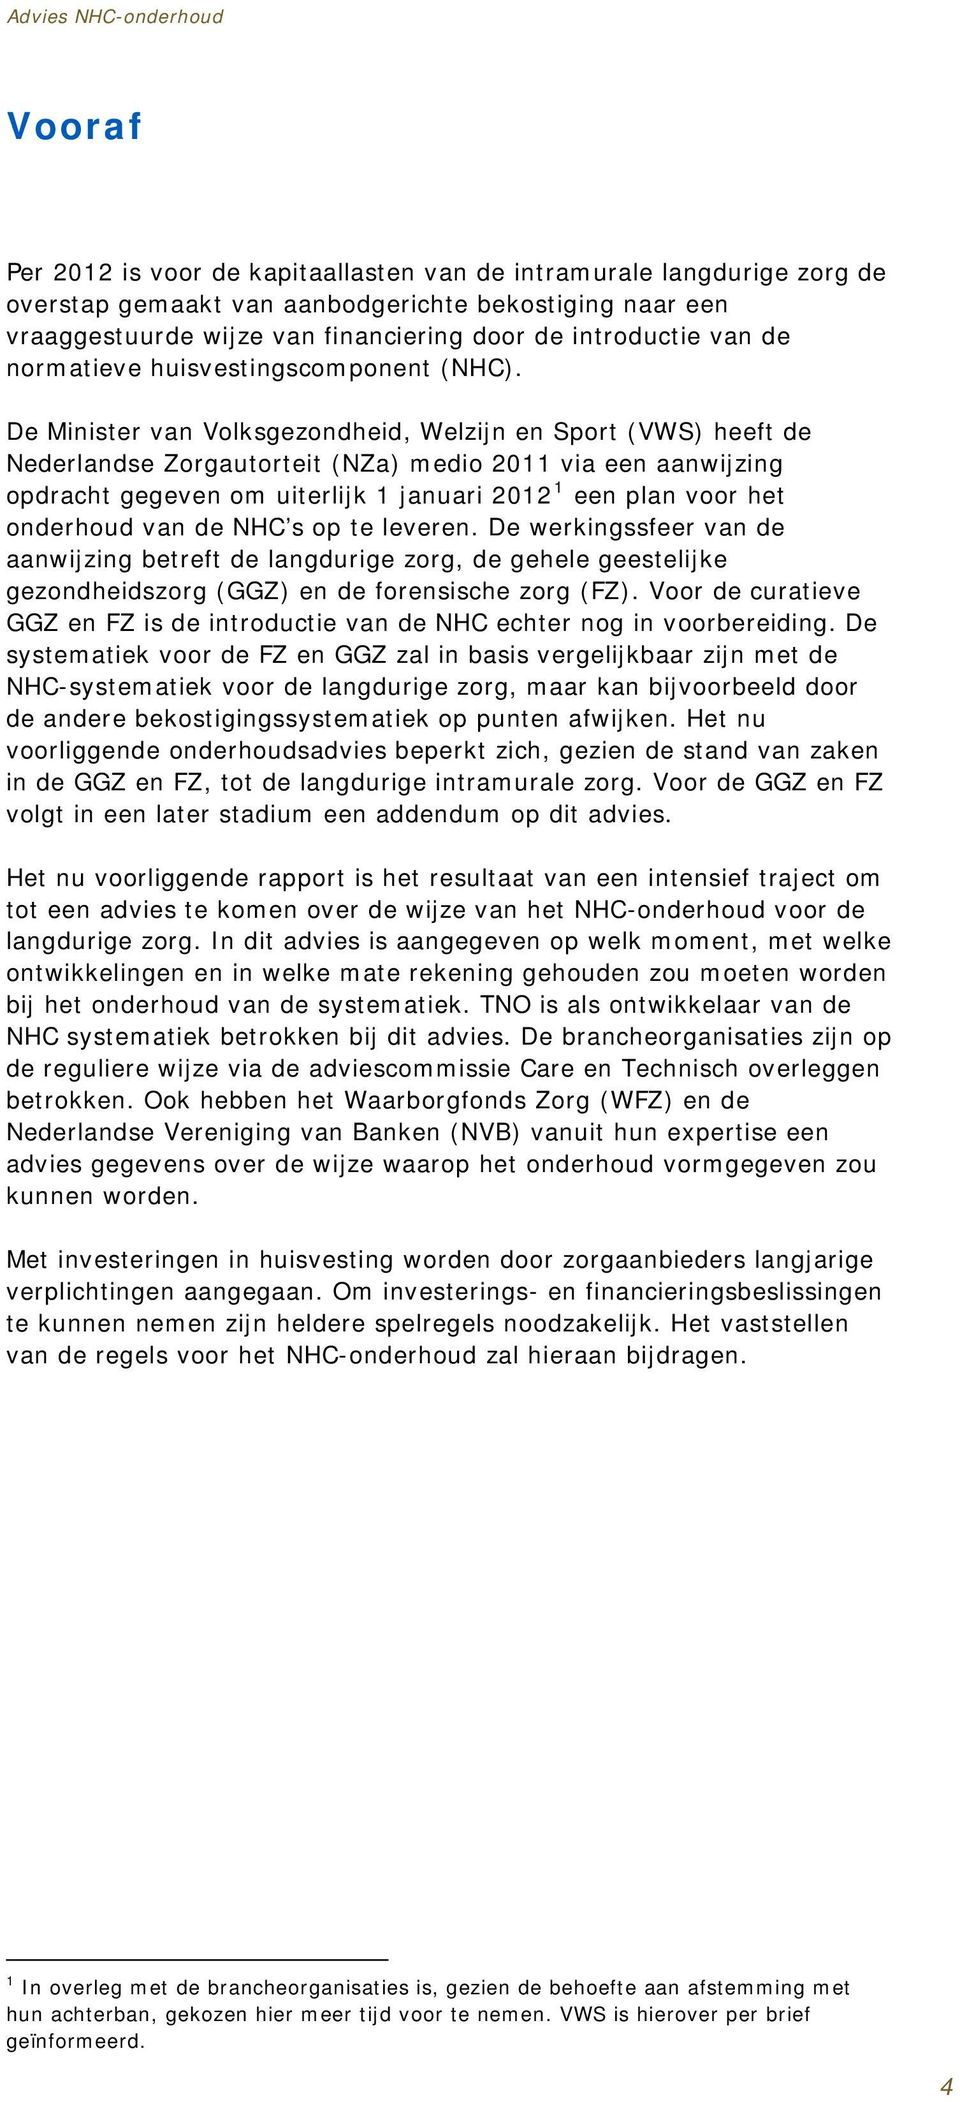 De Minister van Volksgezondheid, Welzijn en Sport (VWS) heeft de Nederlandse Zorgautorteit (NZa) medio 2011 via een aanwijzing opdracht gegeven om uiterlijk 1 januari 2012 1 een plan voor het